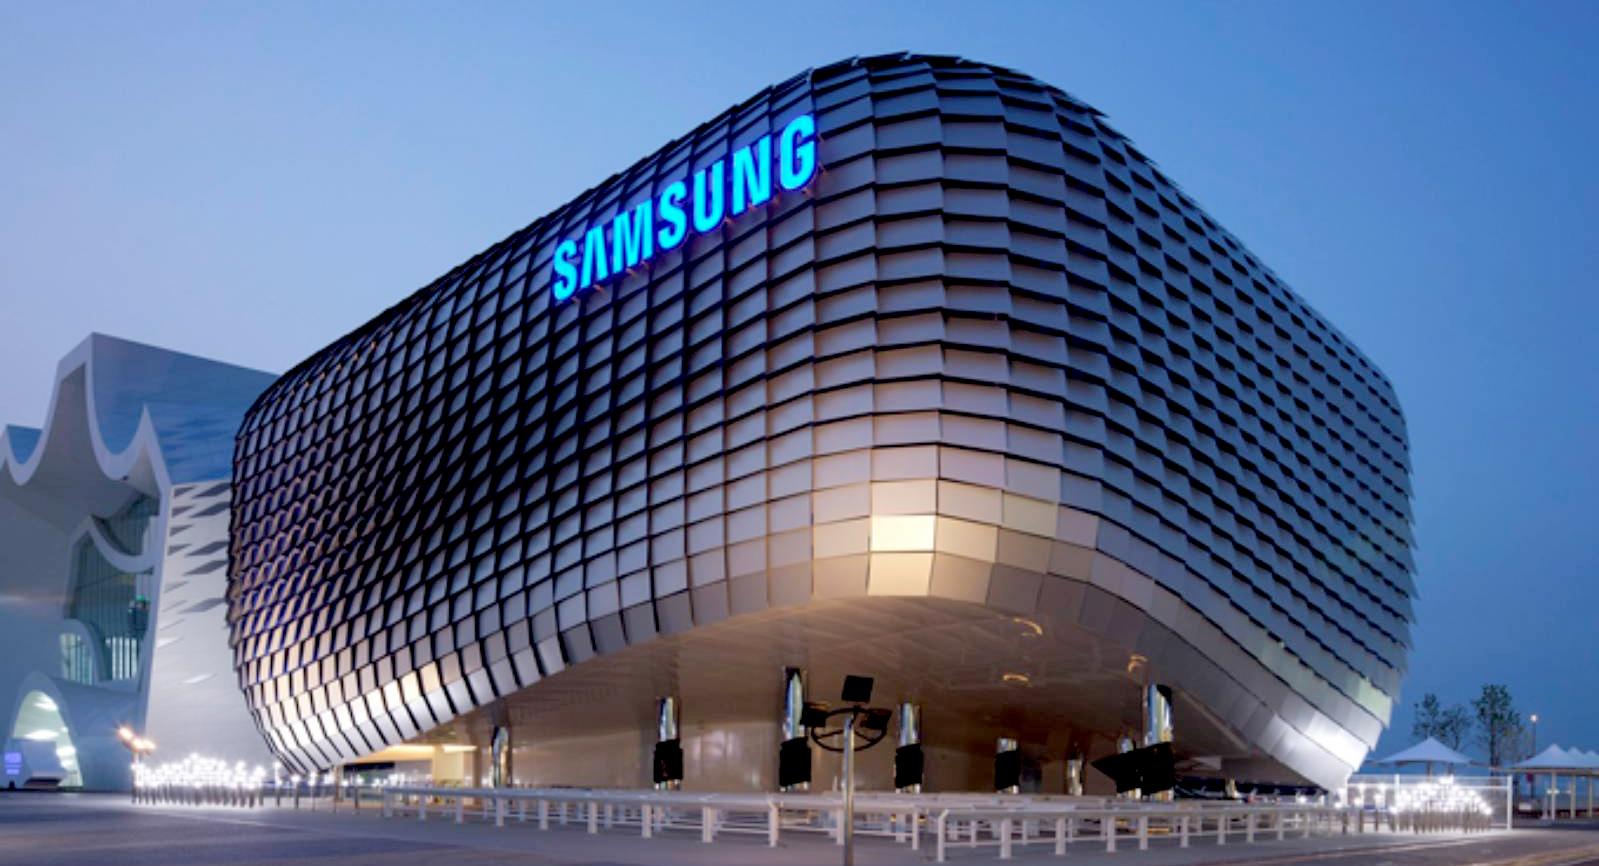 Le bénéfice d'exploitation de Samsung a chuté de 95 % pour atteindre 455 millions de dollars, du jamais vu depuis la crise de 2009.